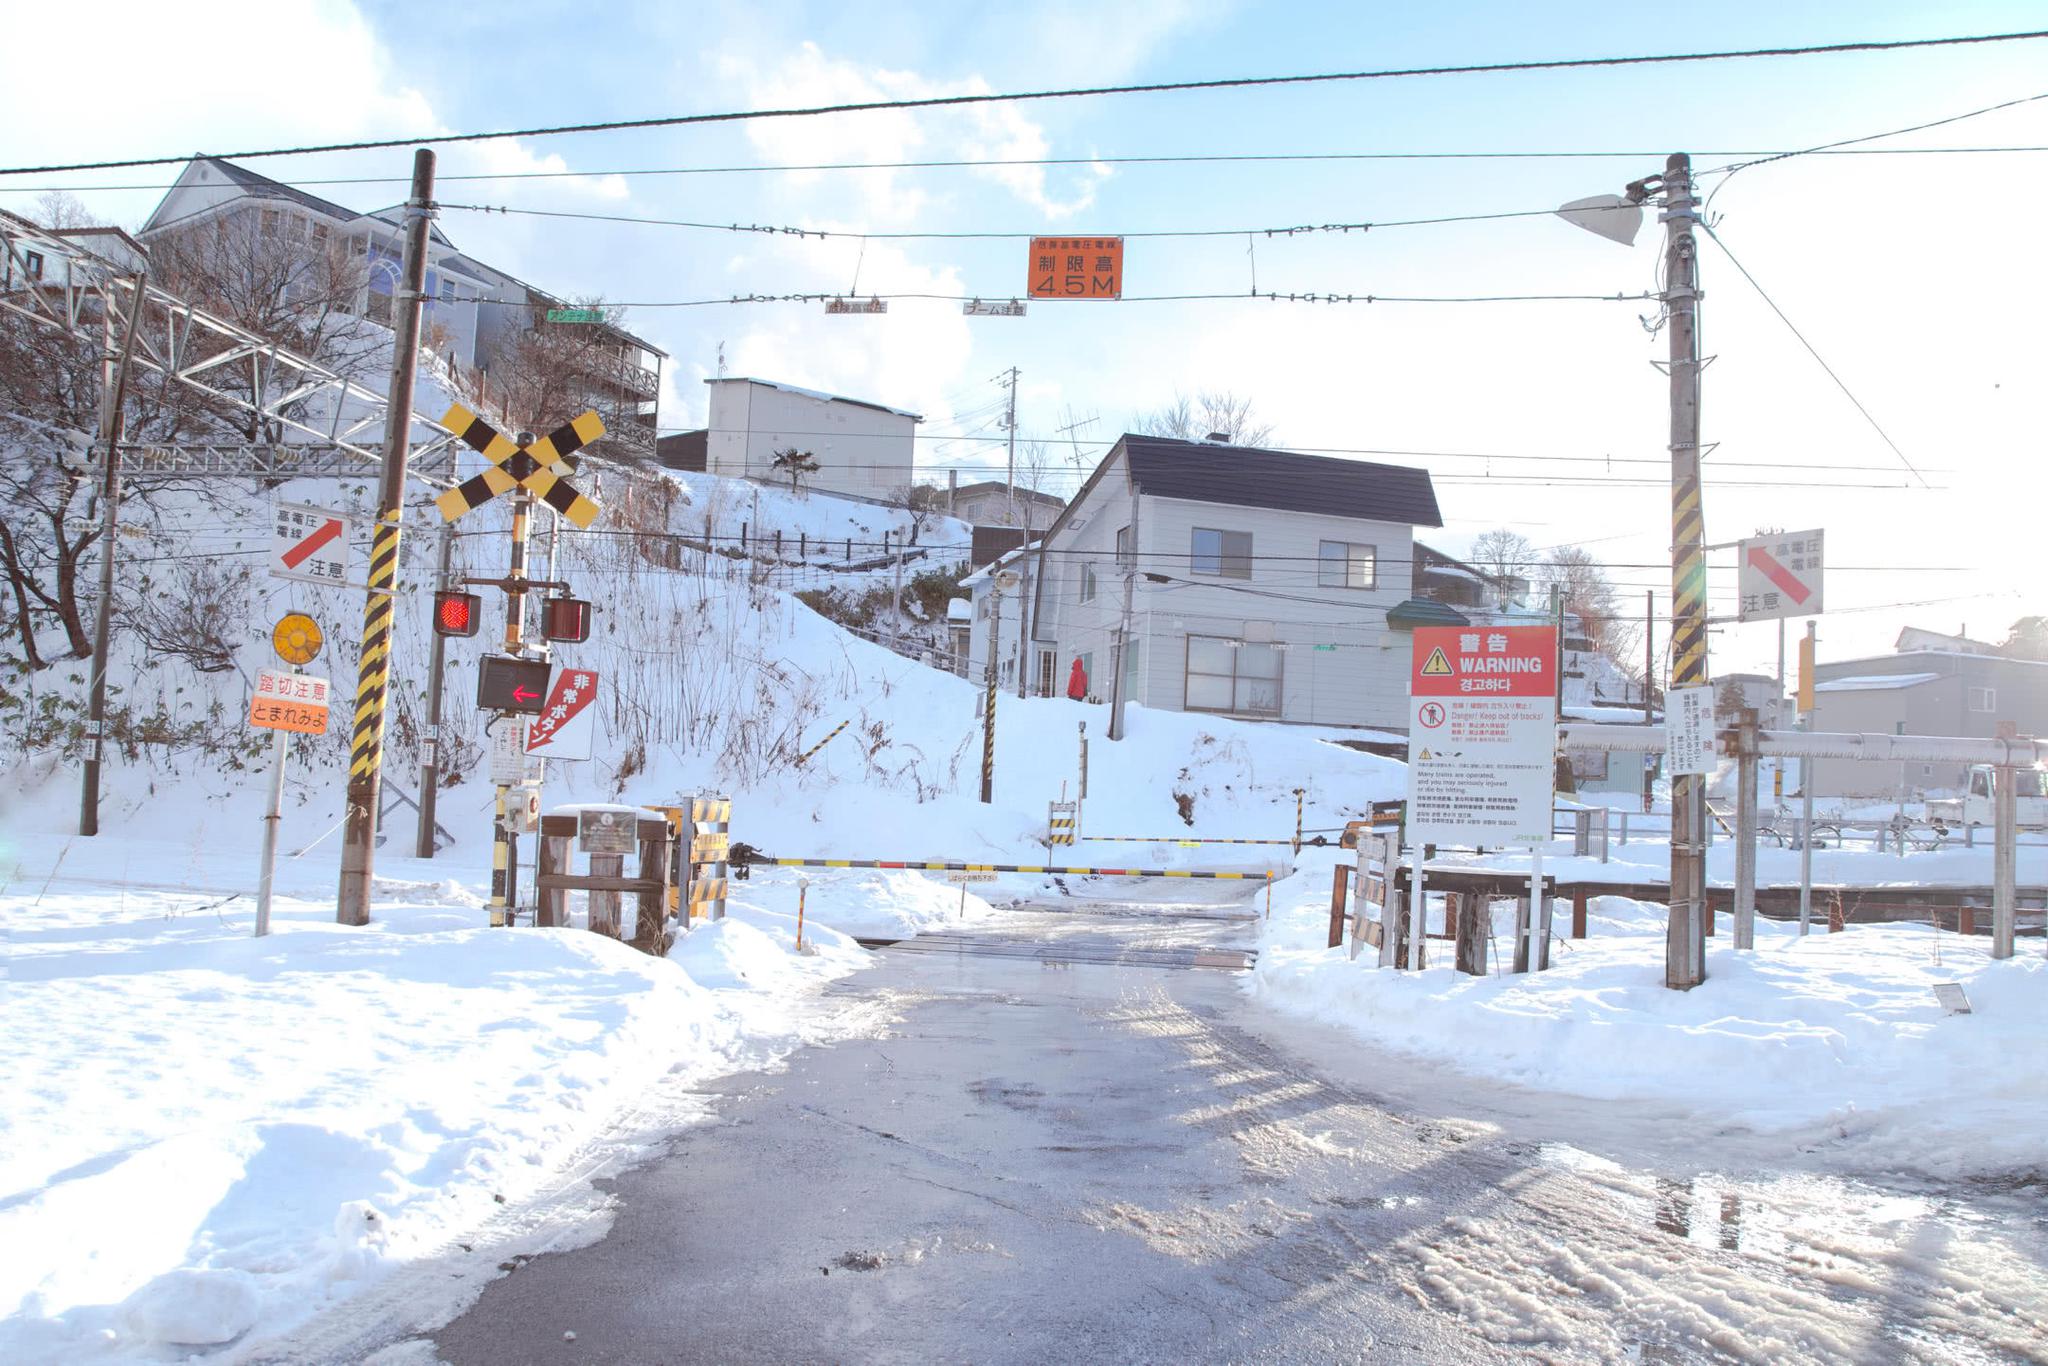 日本北海道下雪啦!听说穷人才来北海道,富人都去东北雪乡?